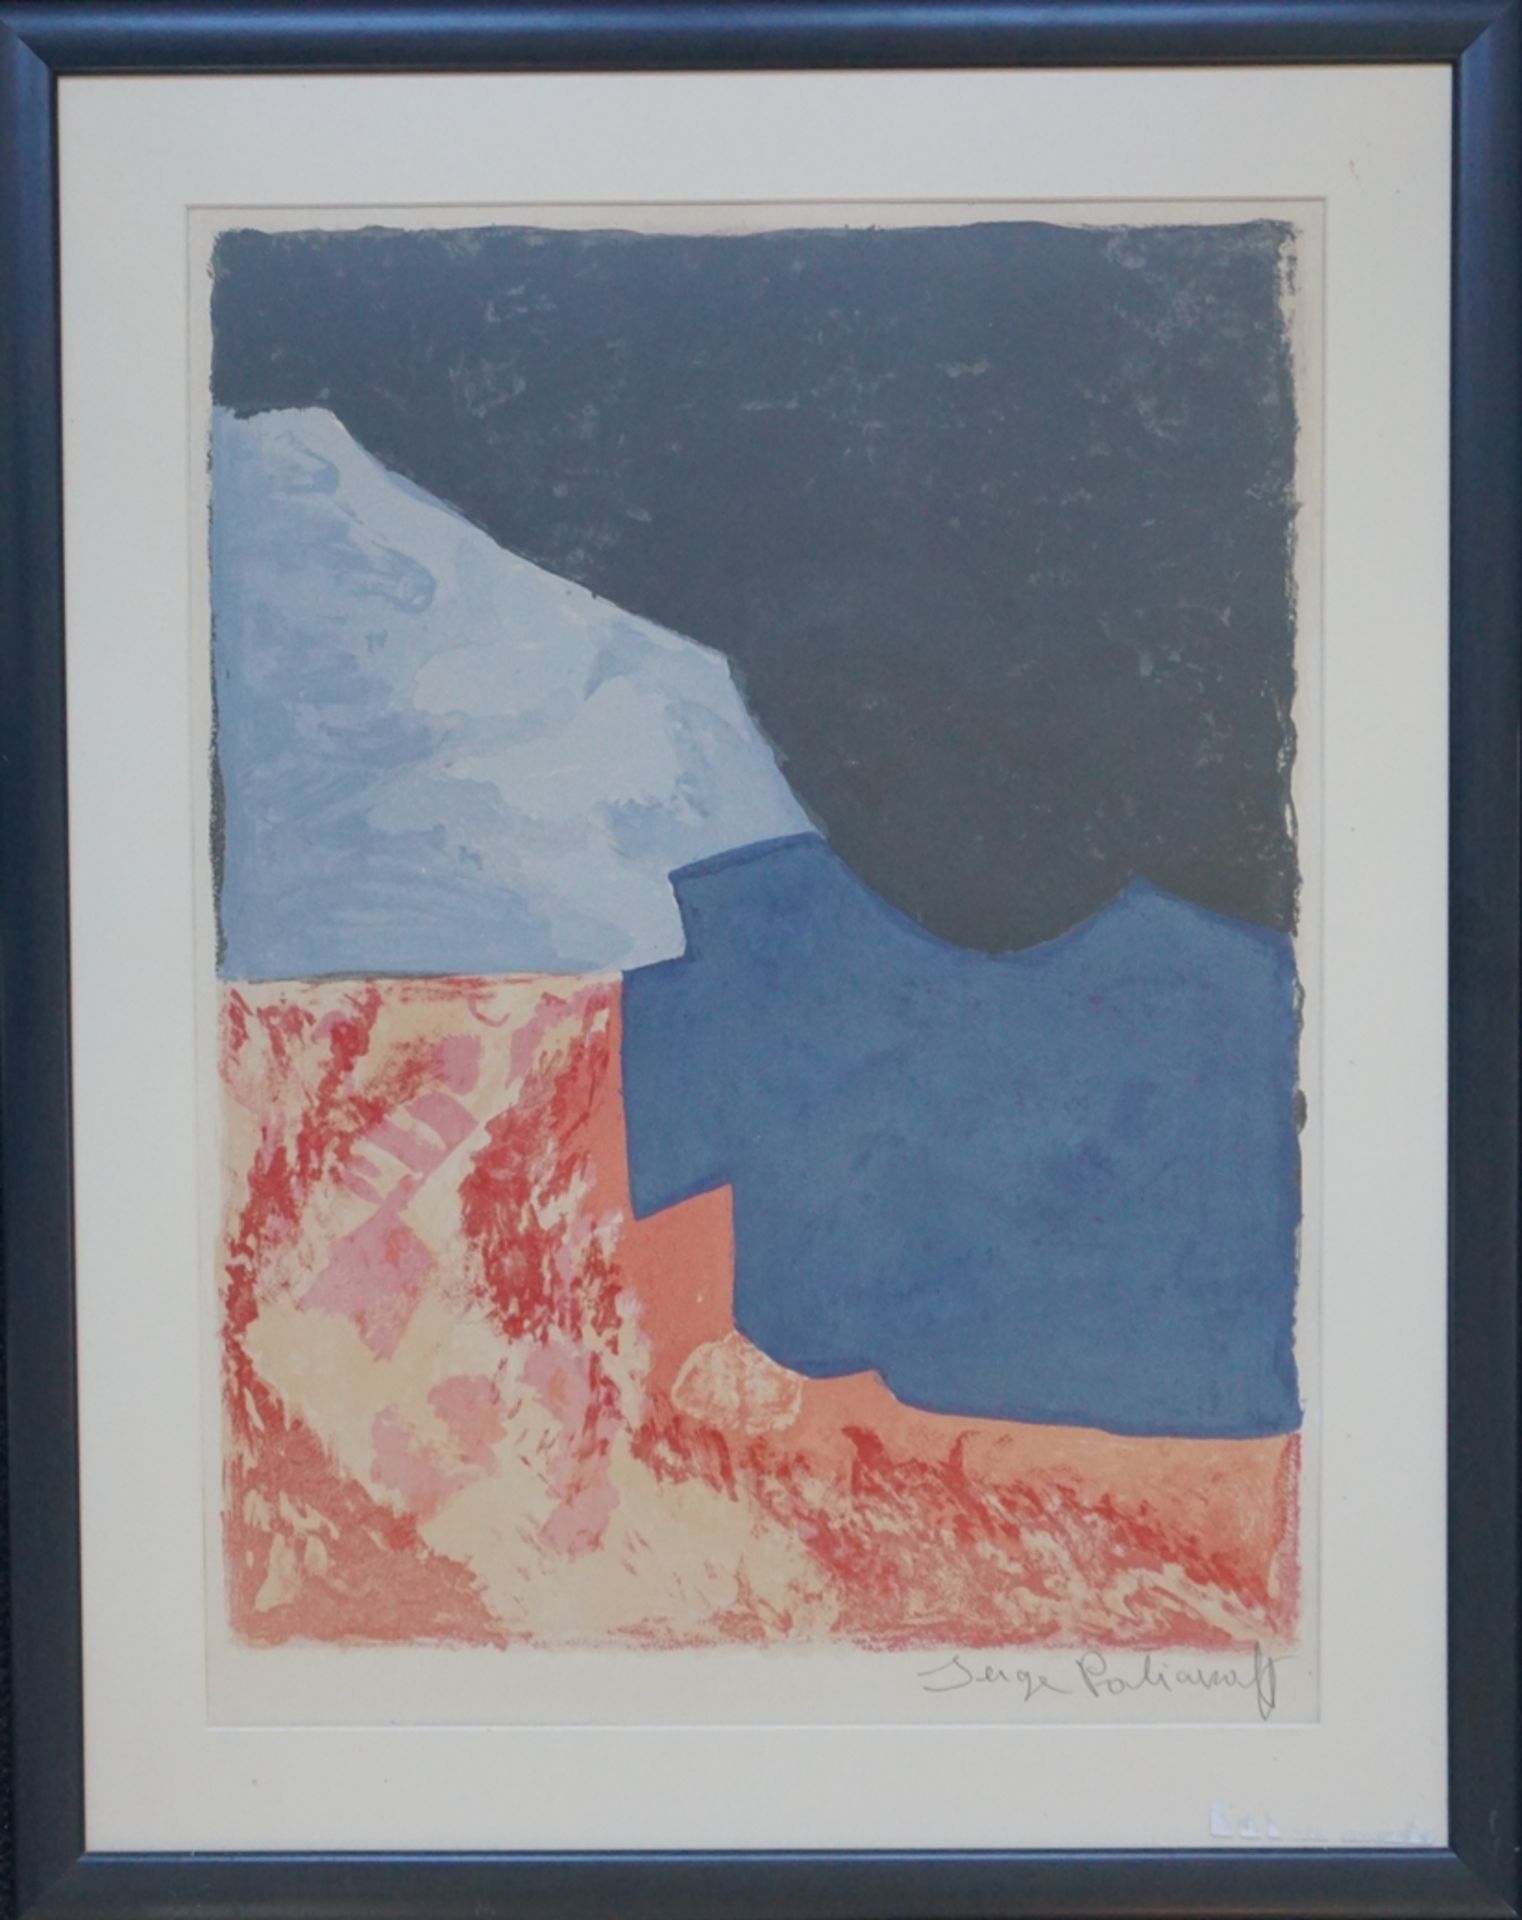 Serge Poliakoff (Moskau 1900 - 1969 Paris) "Composition rouge grise et noire" 1960 - Bild 8 aus 8